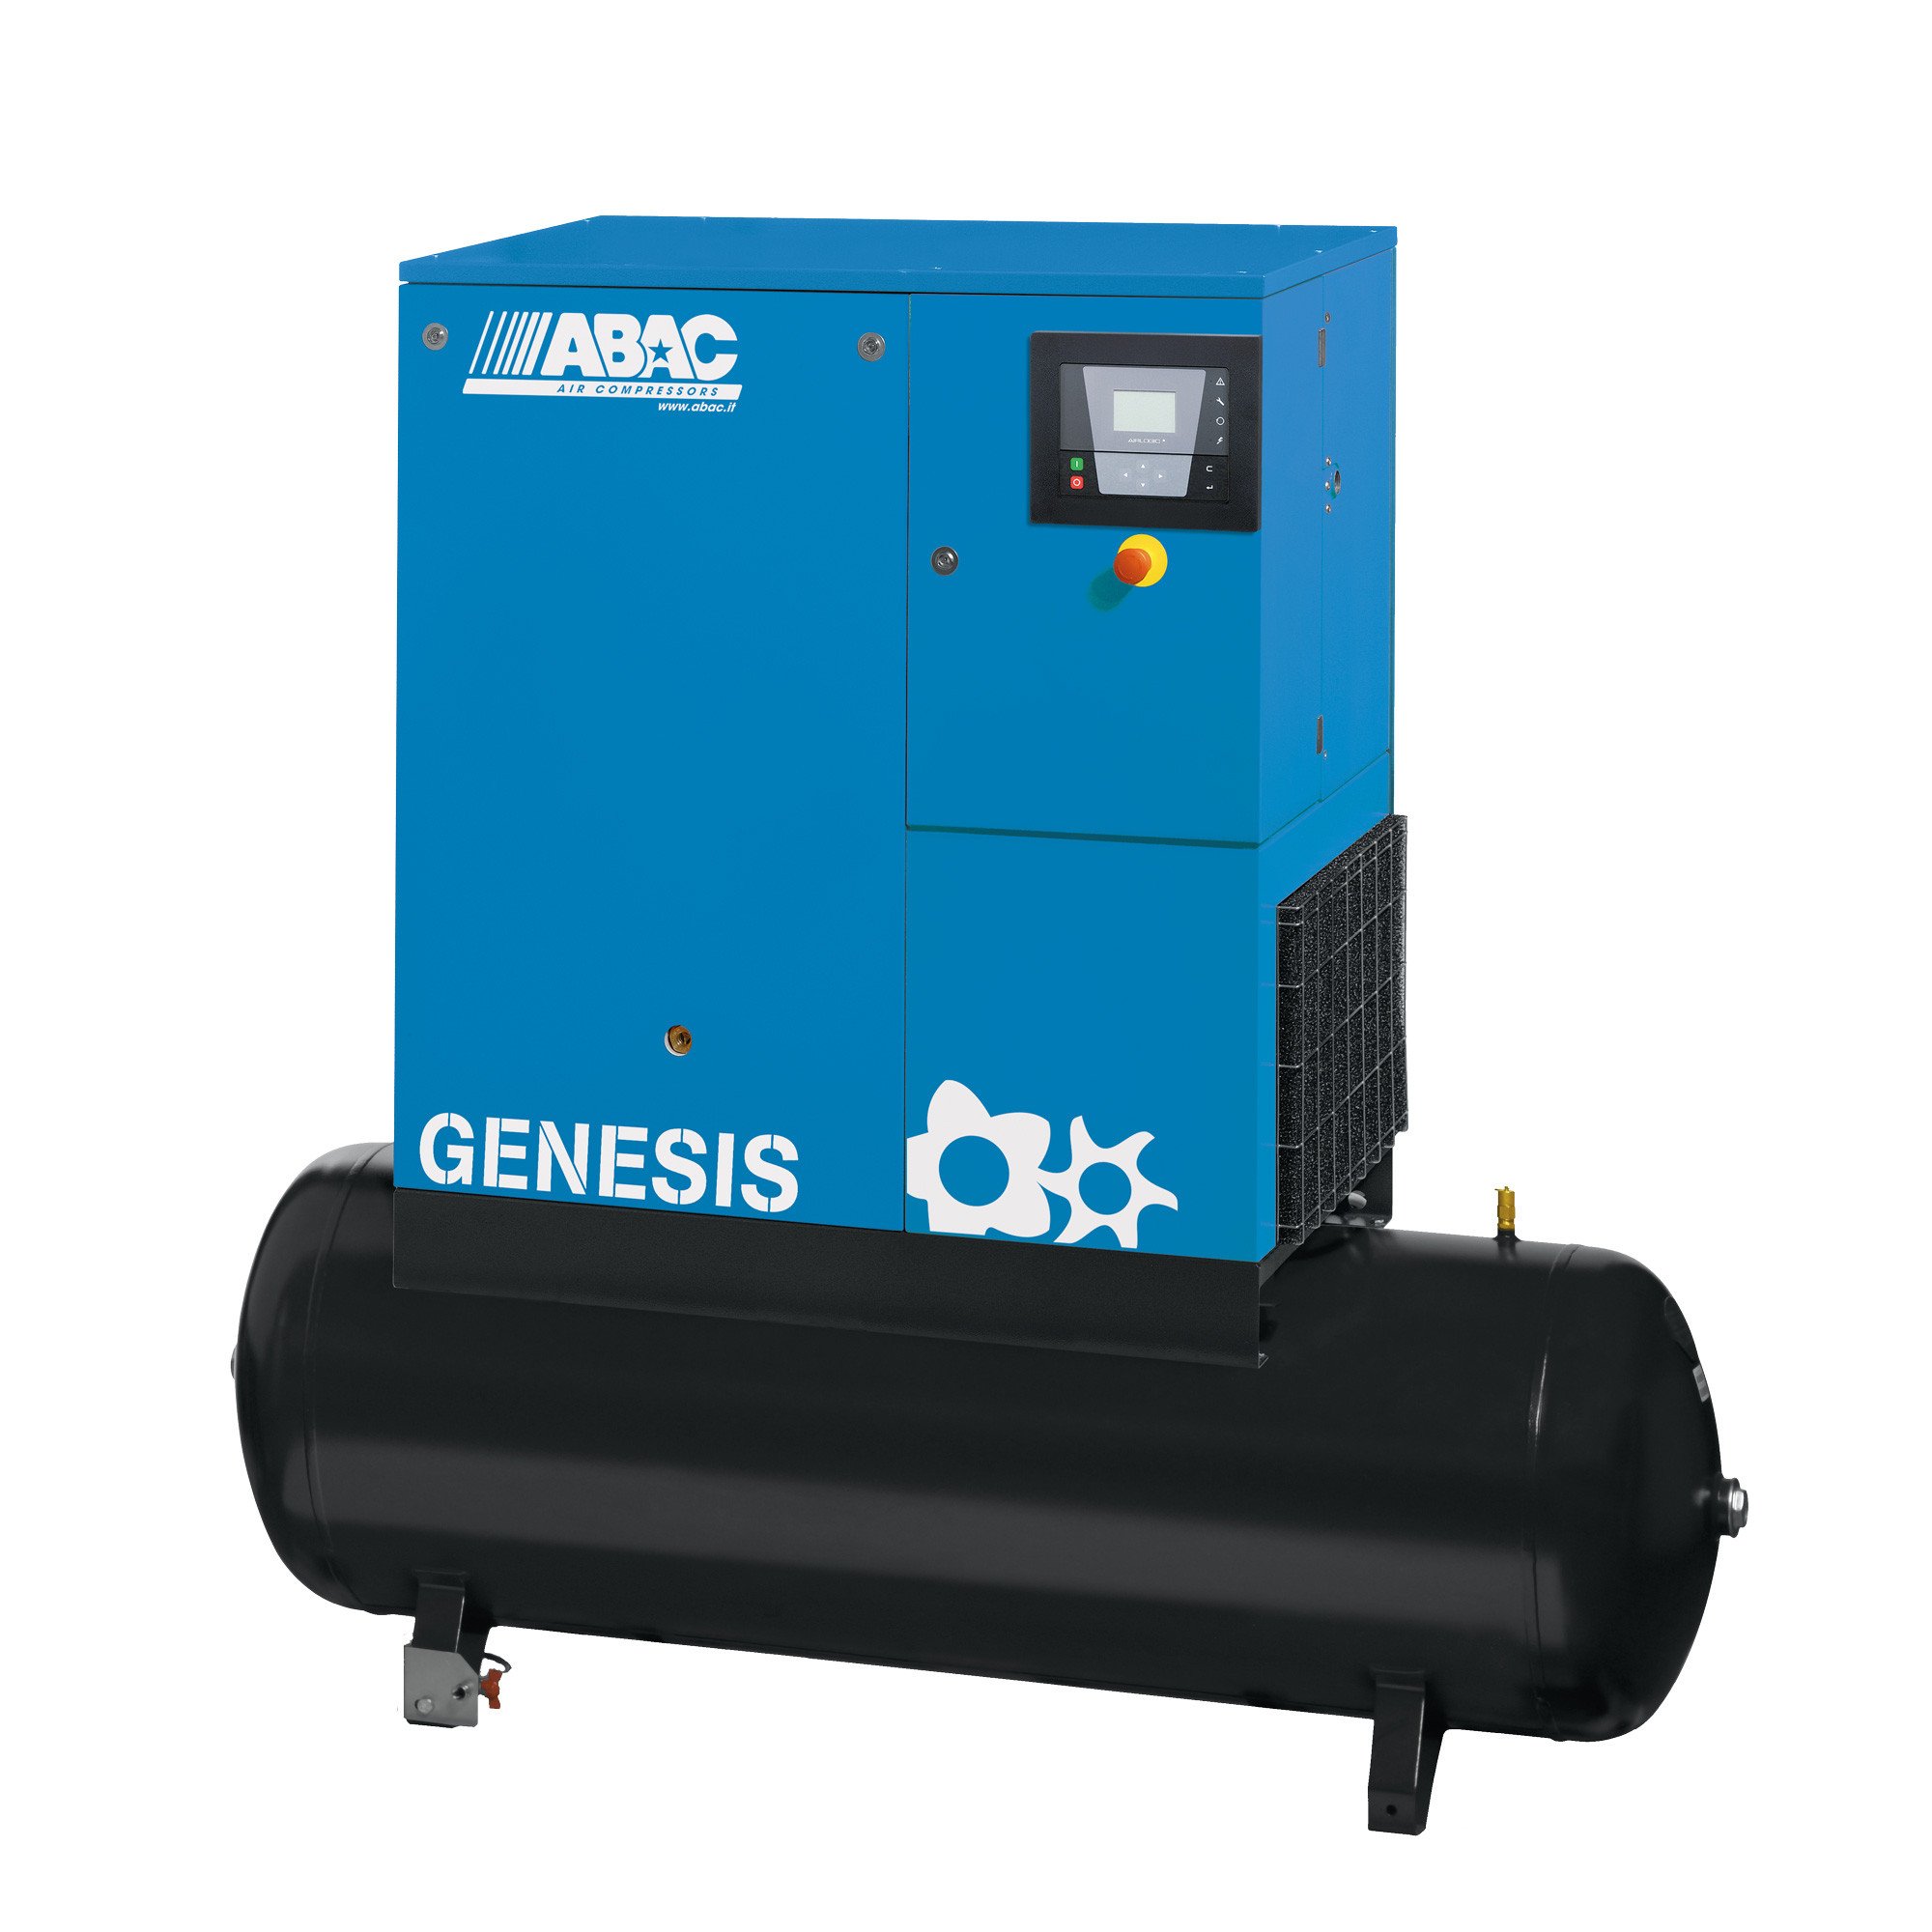 ABAC Genesis 500L, 58.5 CFM, 11 kW定速螺杆空压机